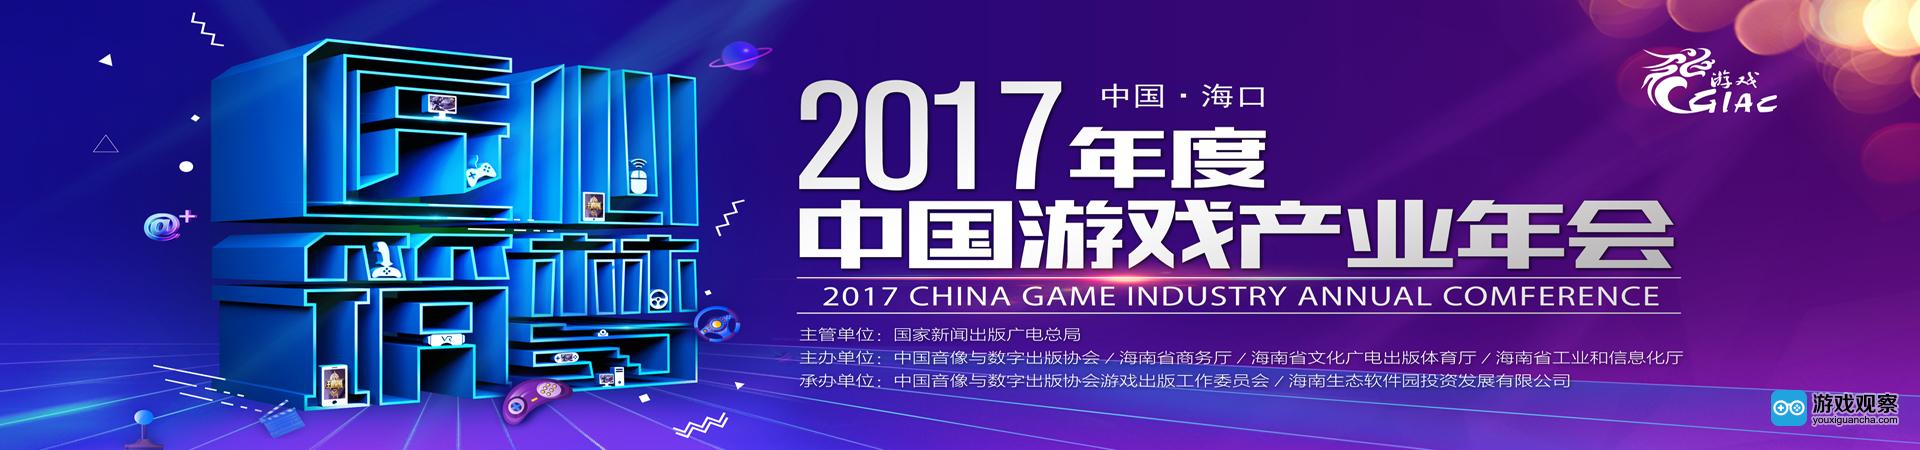 匠心筑梦 再聚海南2017年度中国游戏产业年会开启报名